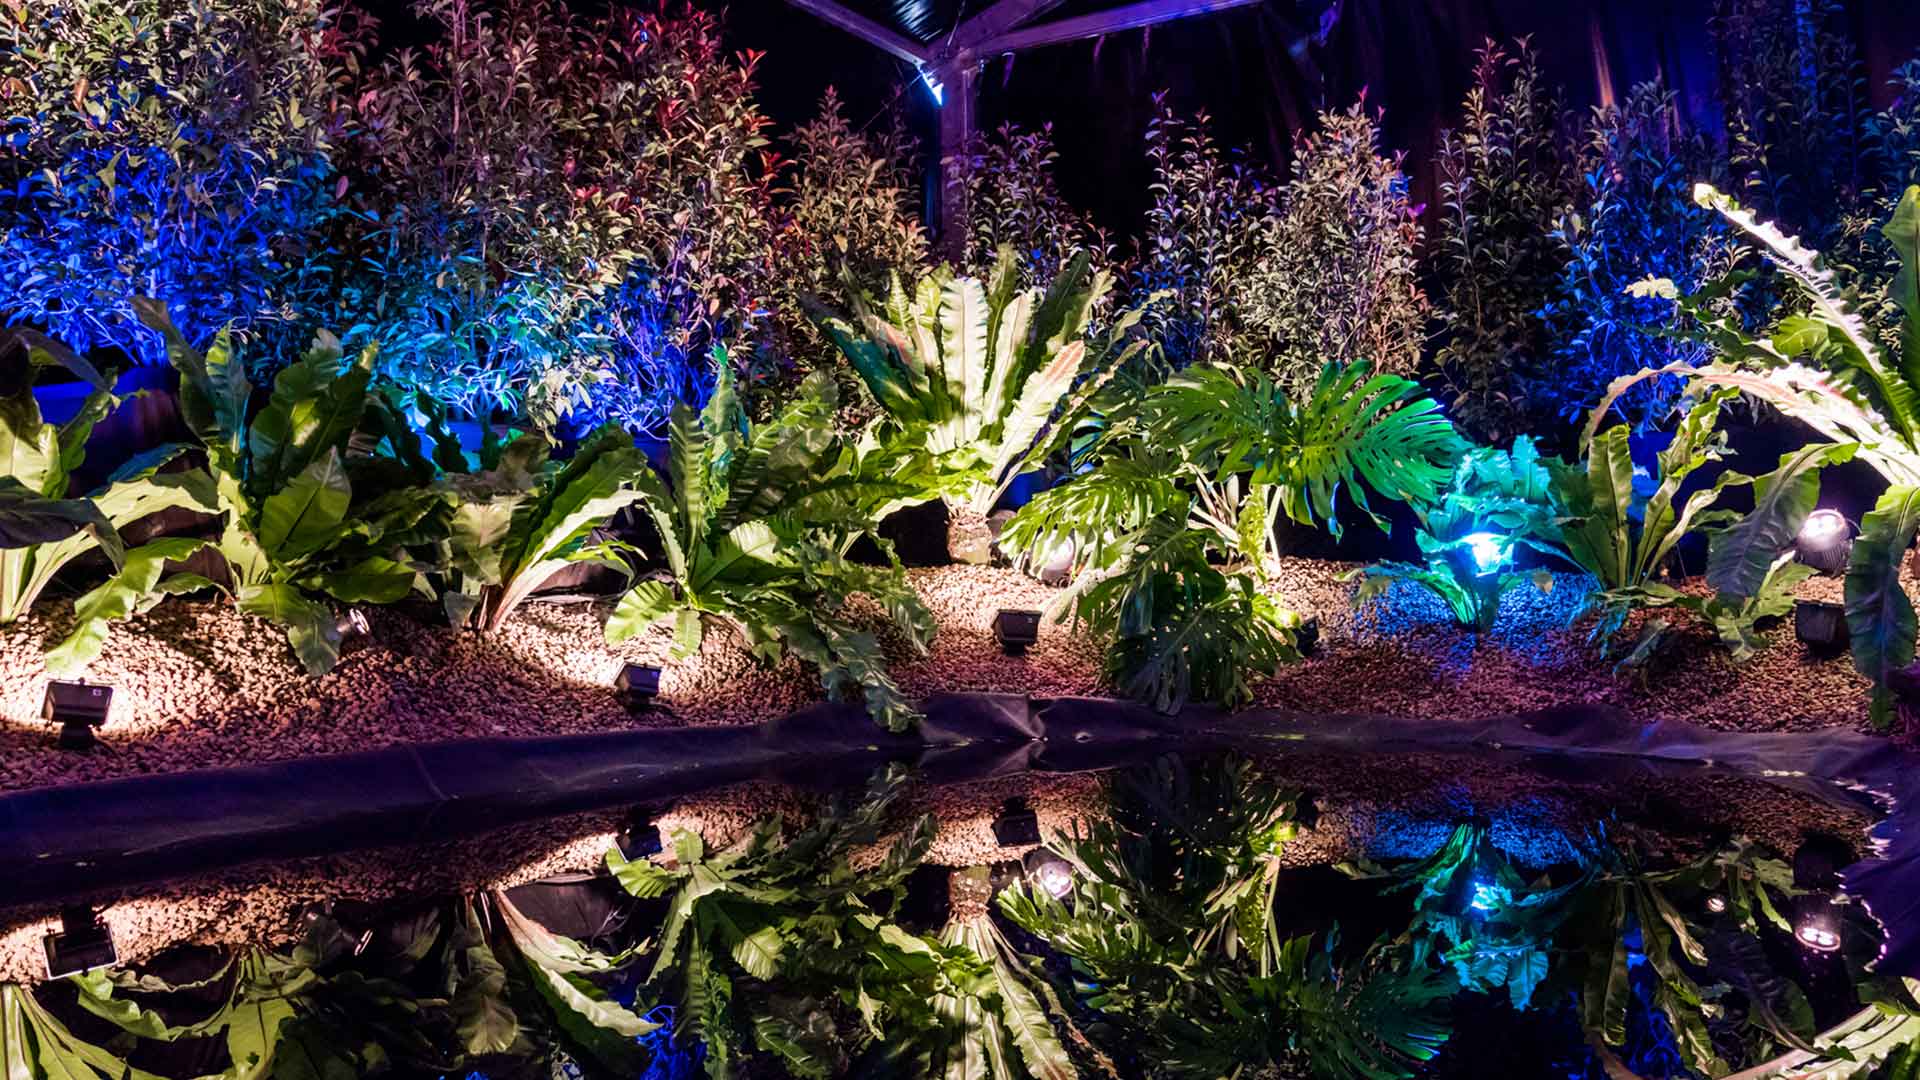 Folie Flore voyage au pays des jardins - jeux de lumière sur plantes